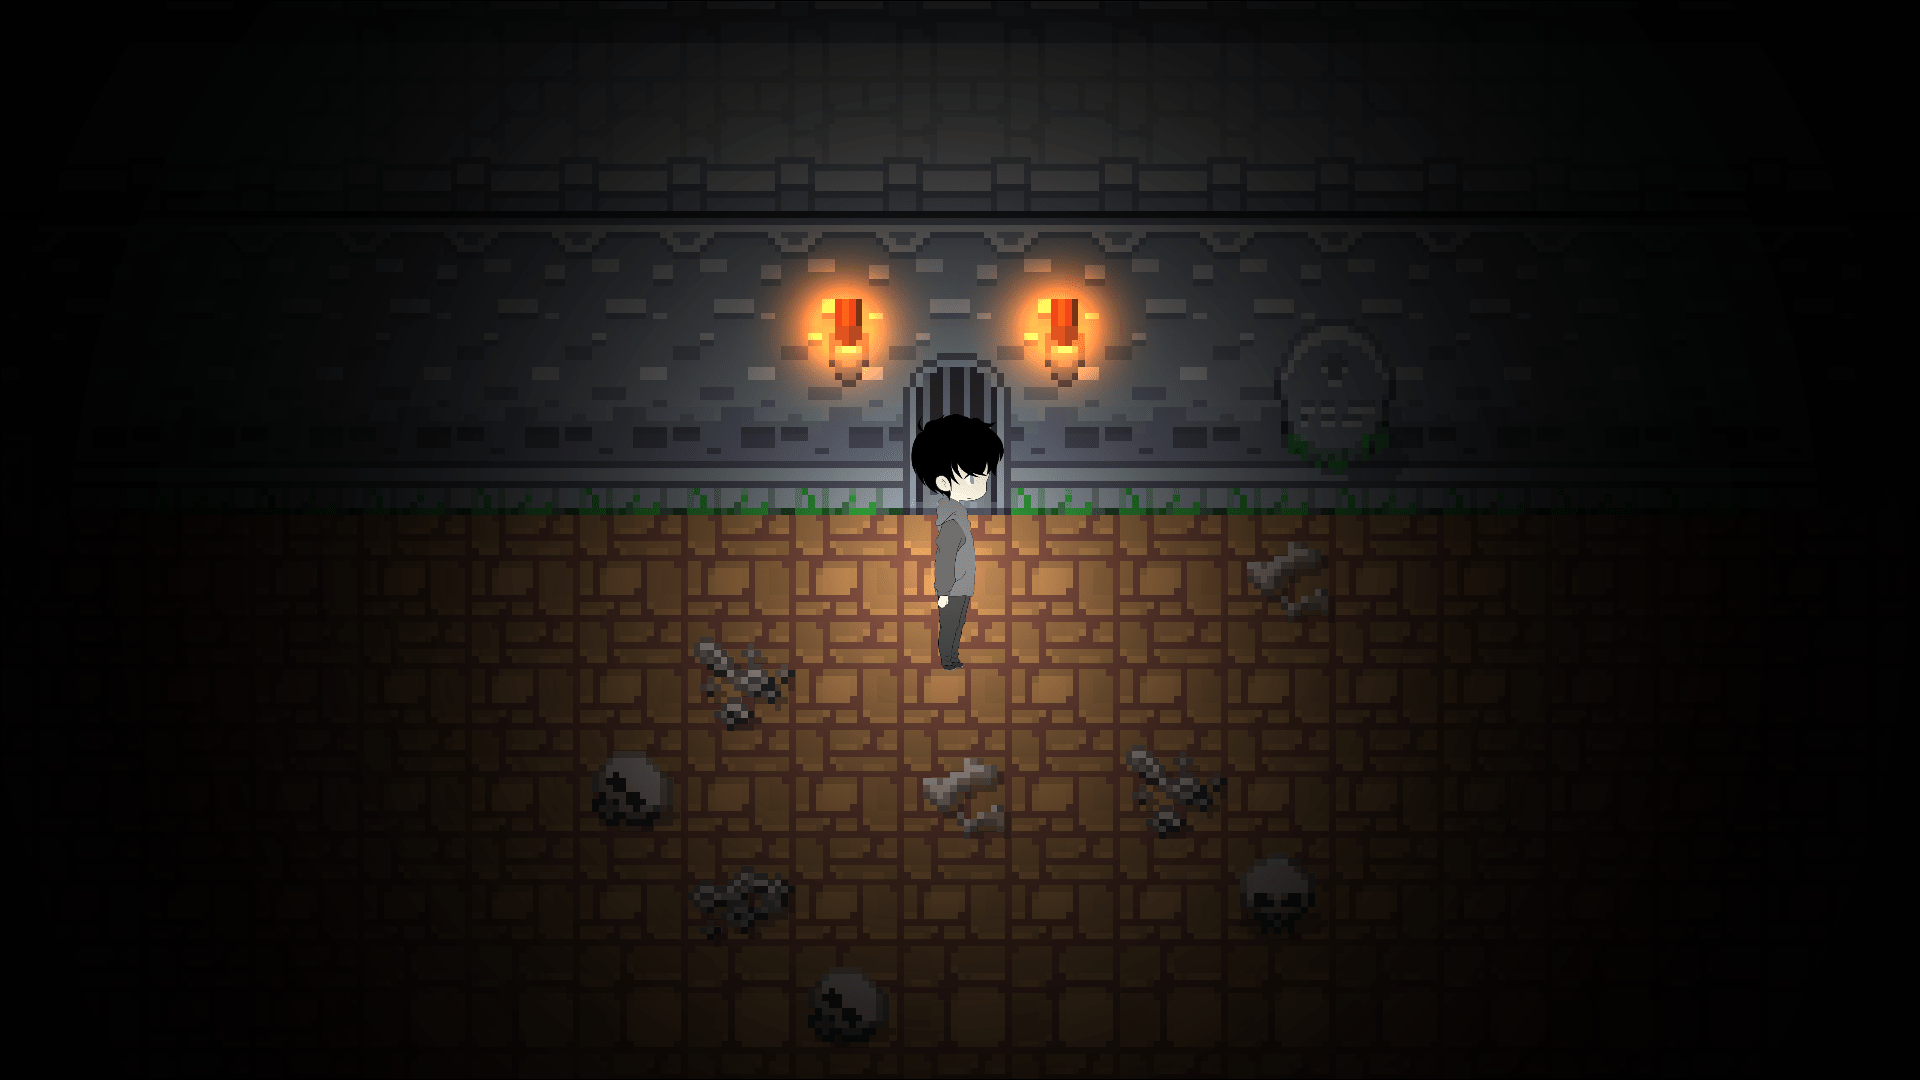 Boy alone in a dark dungeon